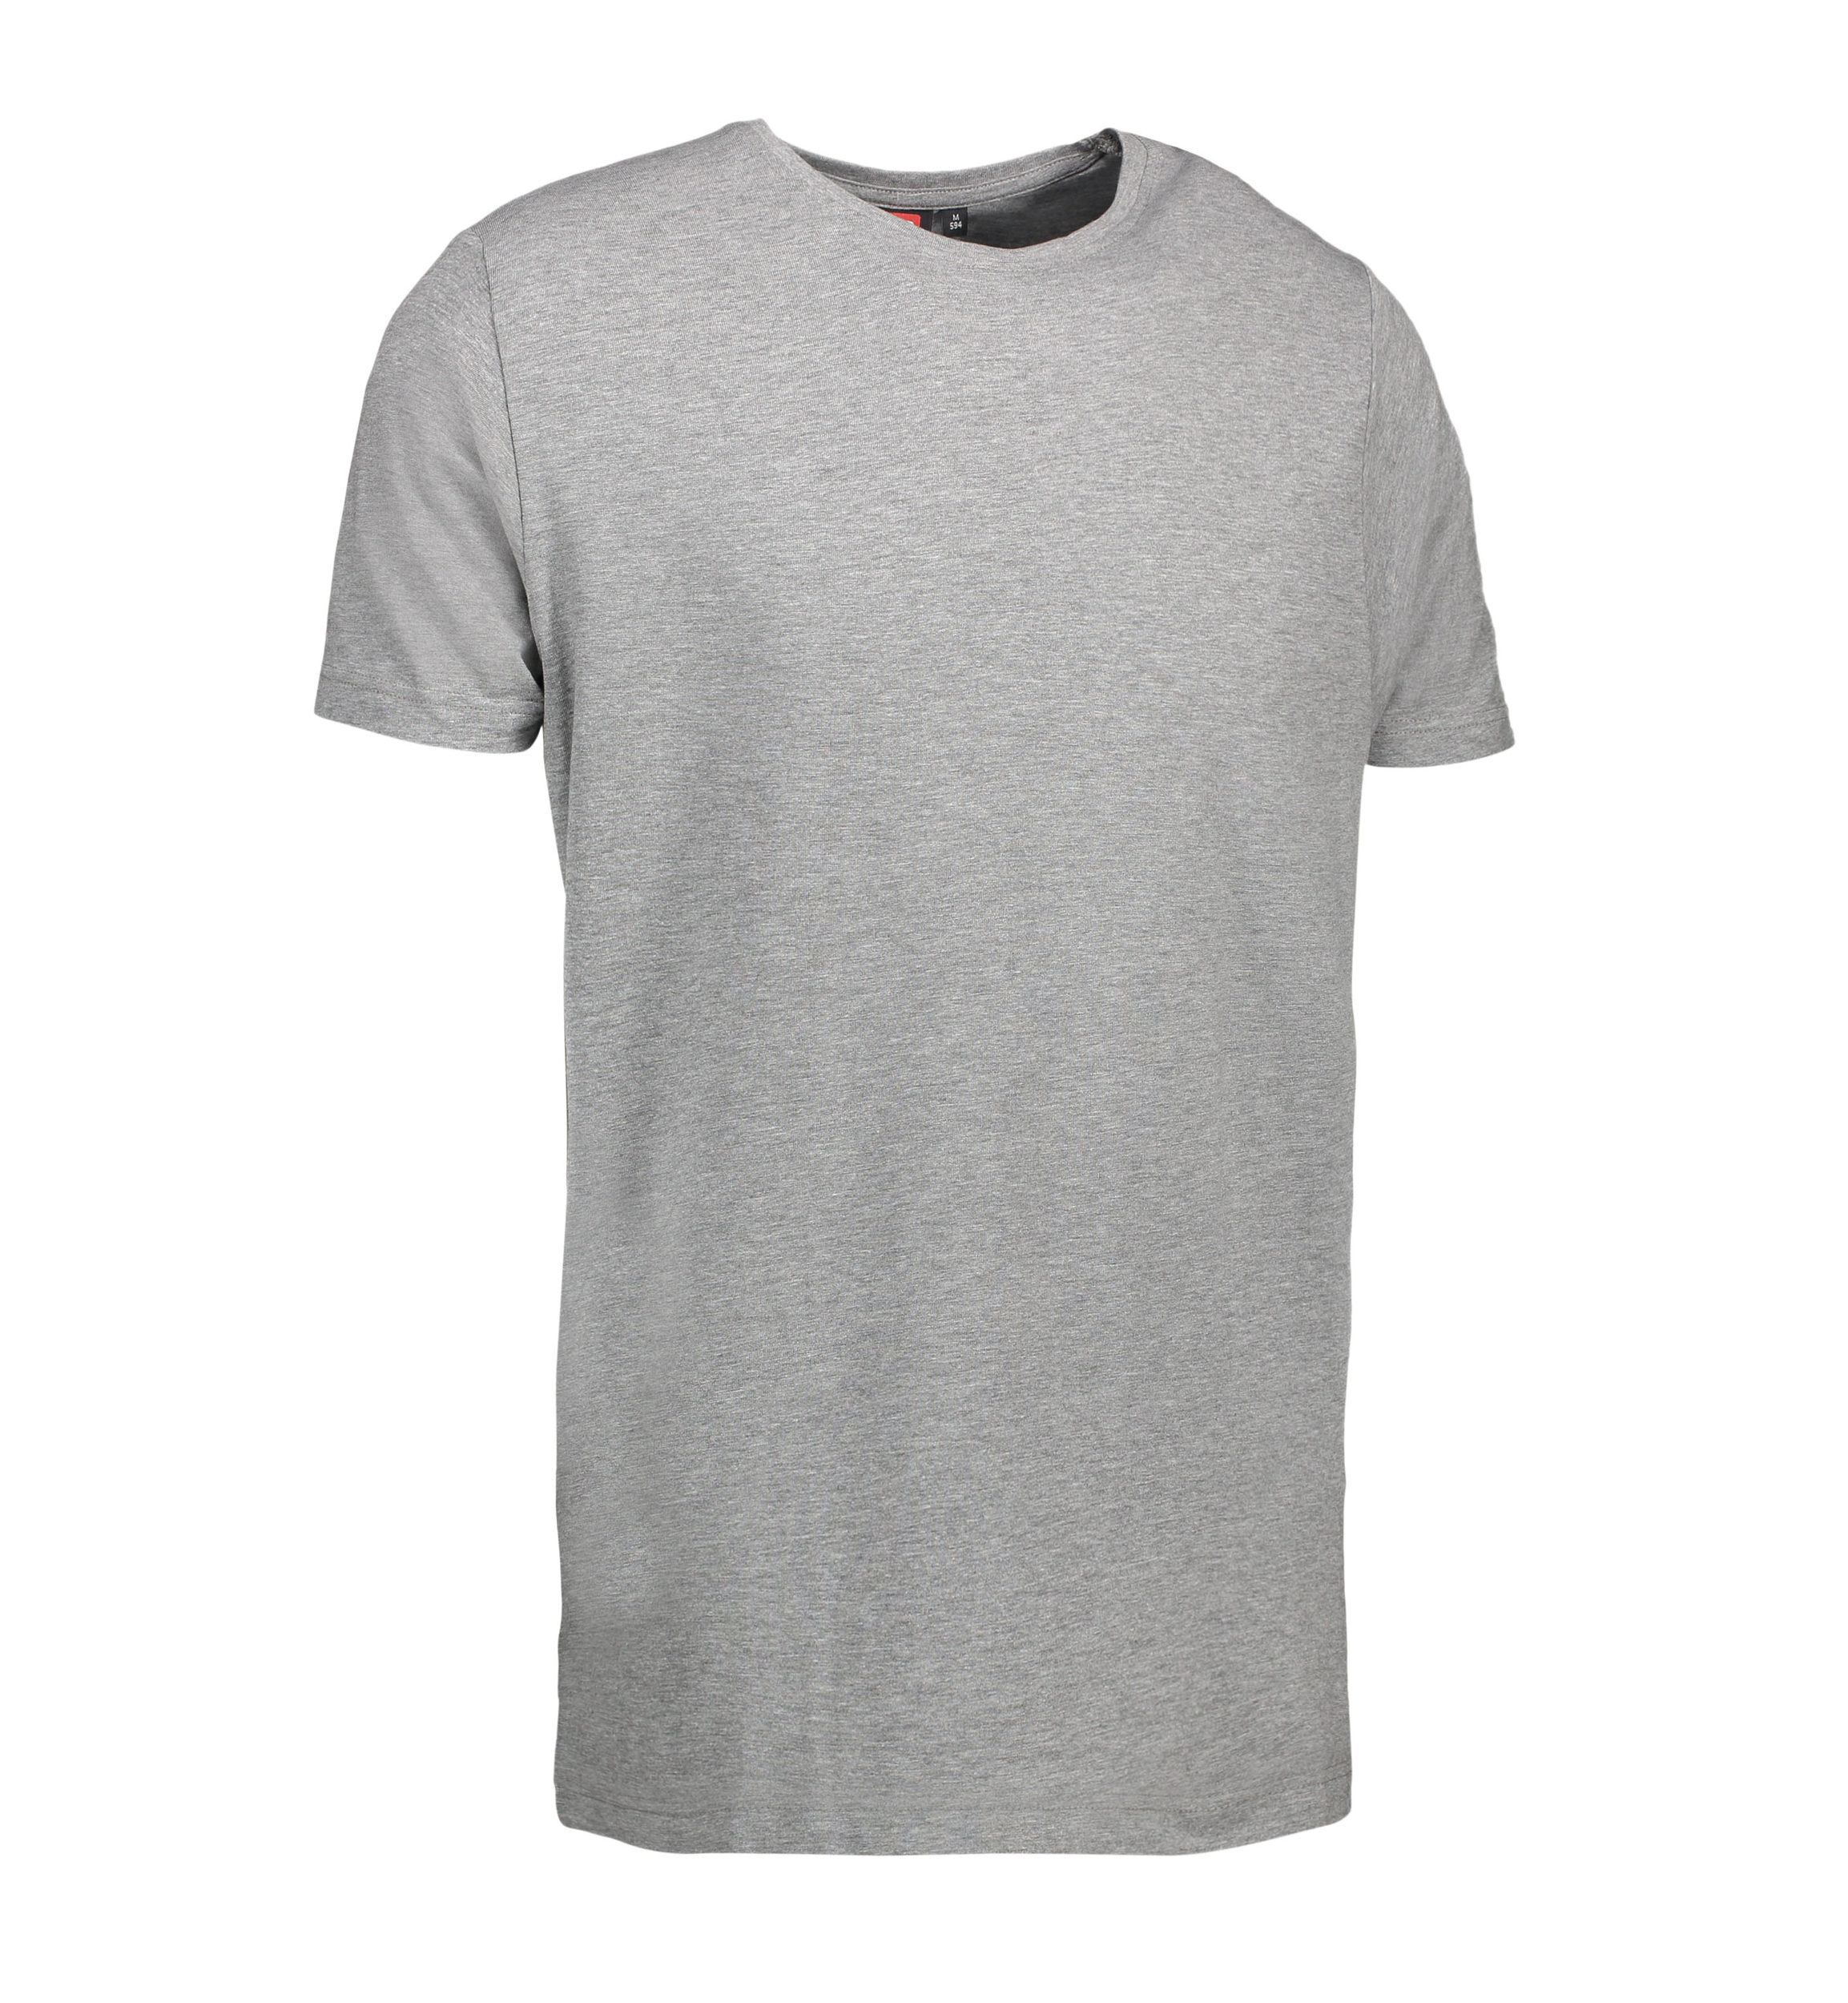 Billede af Stretch t-shirt til mænd i grå - XL hos Sygeplejebutikken.dk